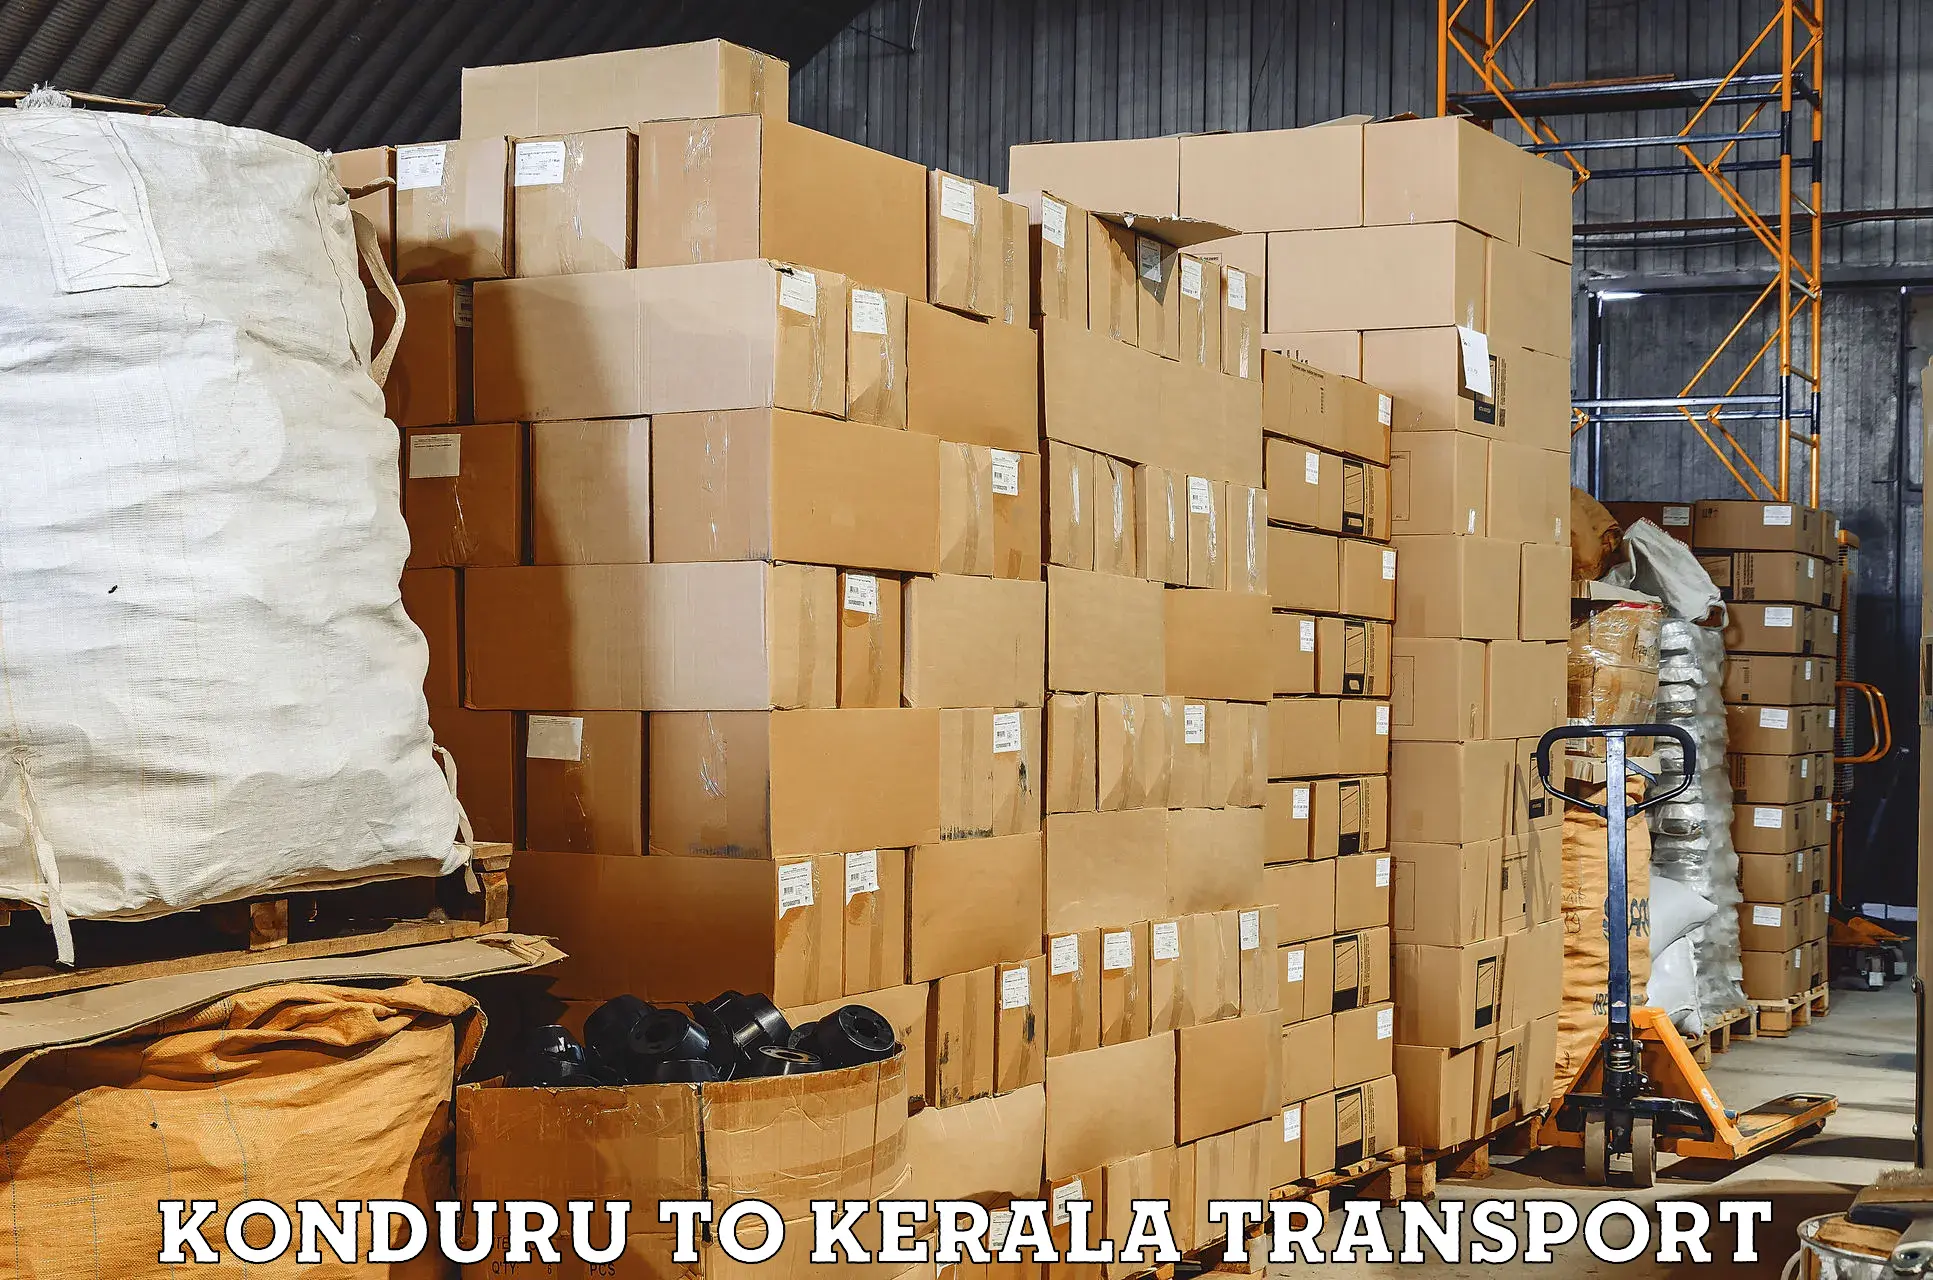 Package delivery services Konduru to Ernakulam